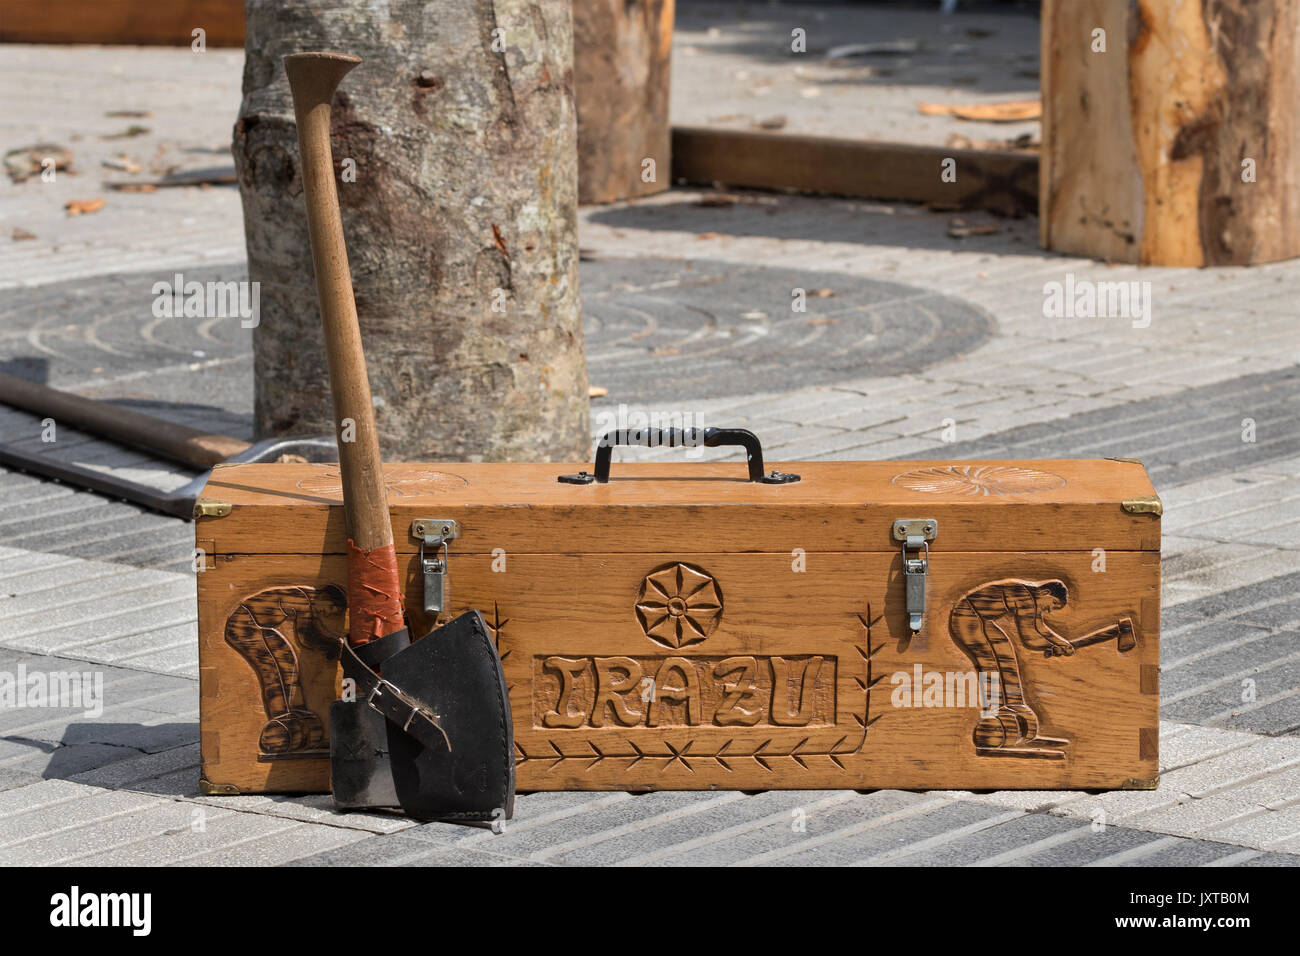 Aizkolari ax in appoggio su una scatola di legno sul terreno. Foto Stock